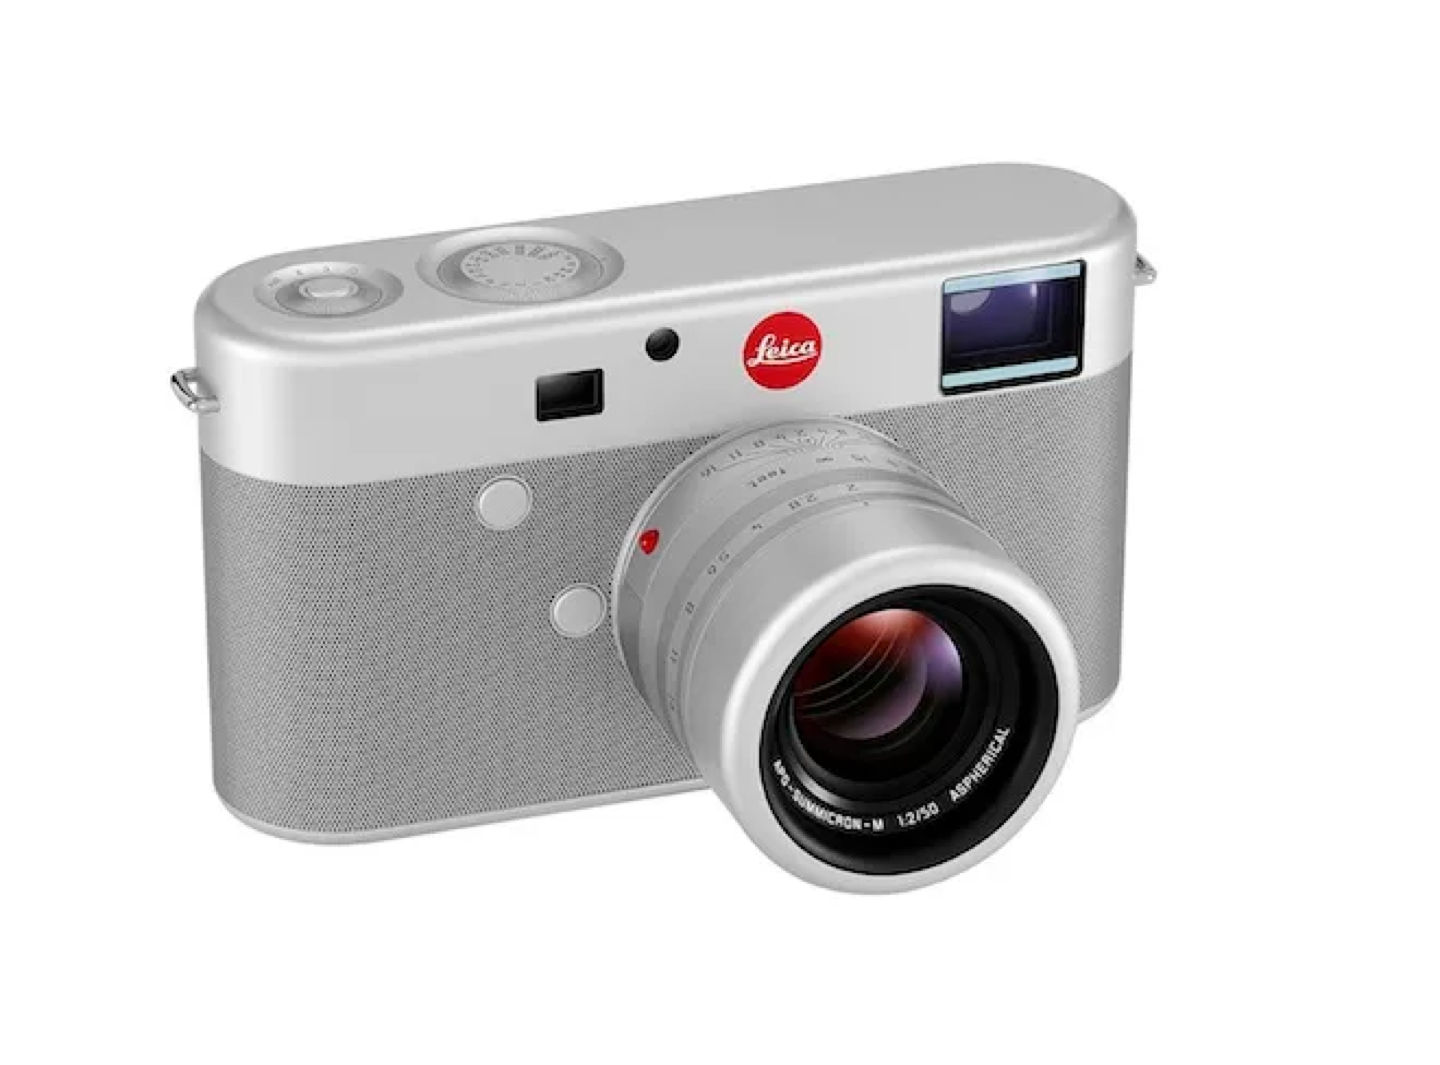 The Jony Ive Leica camera.